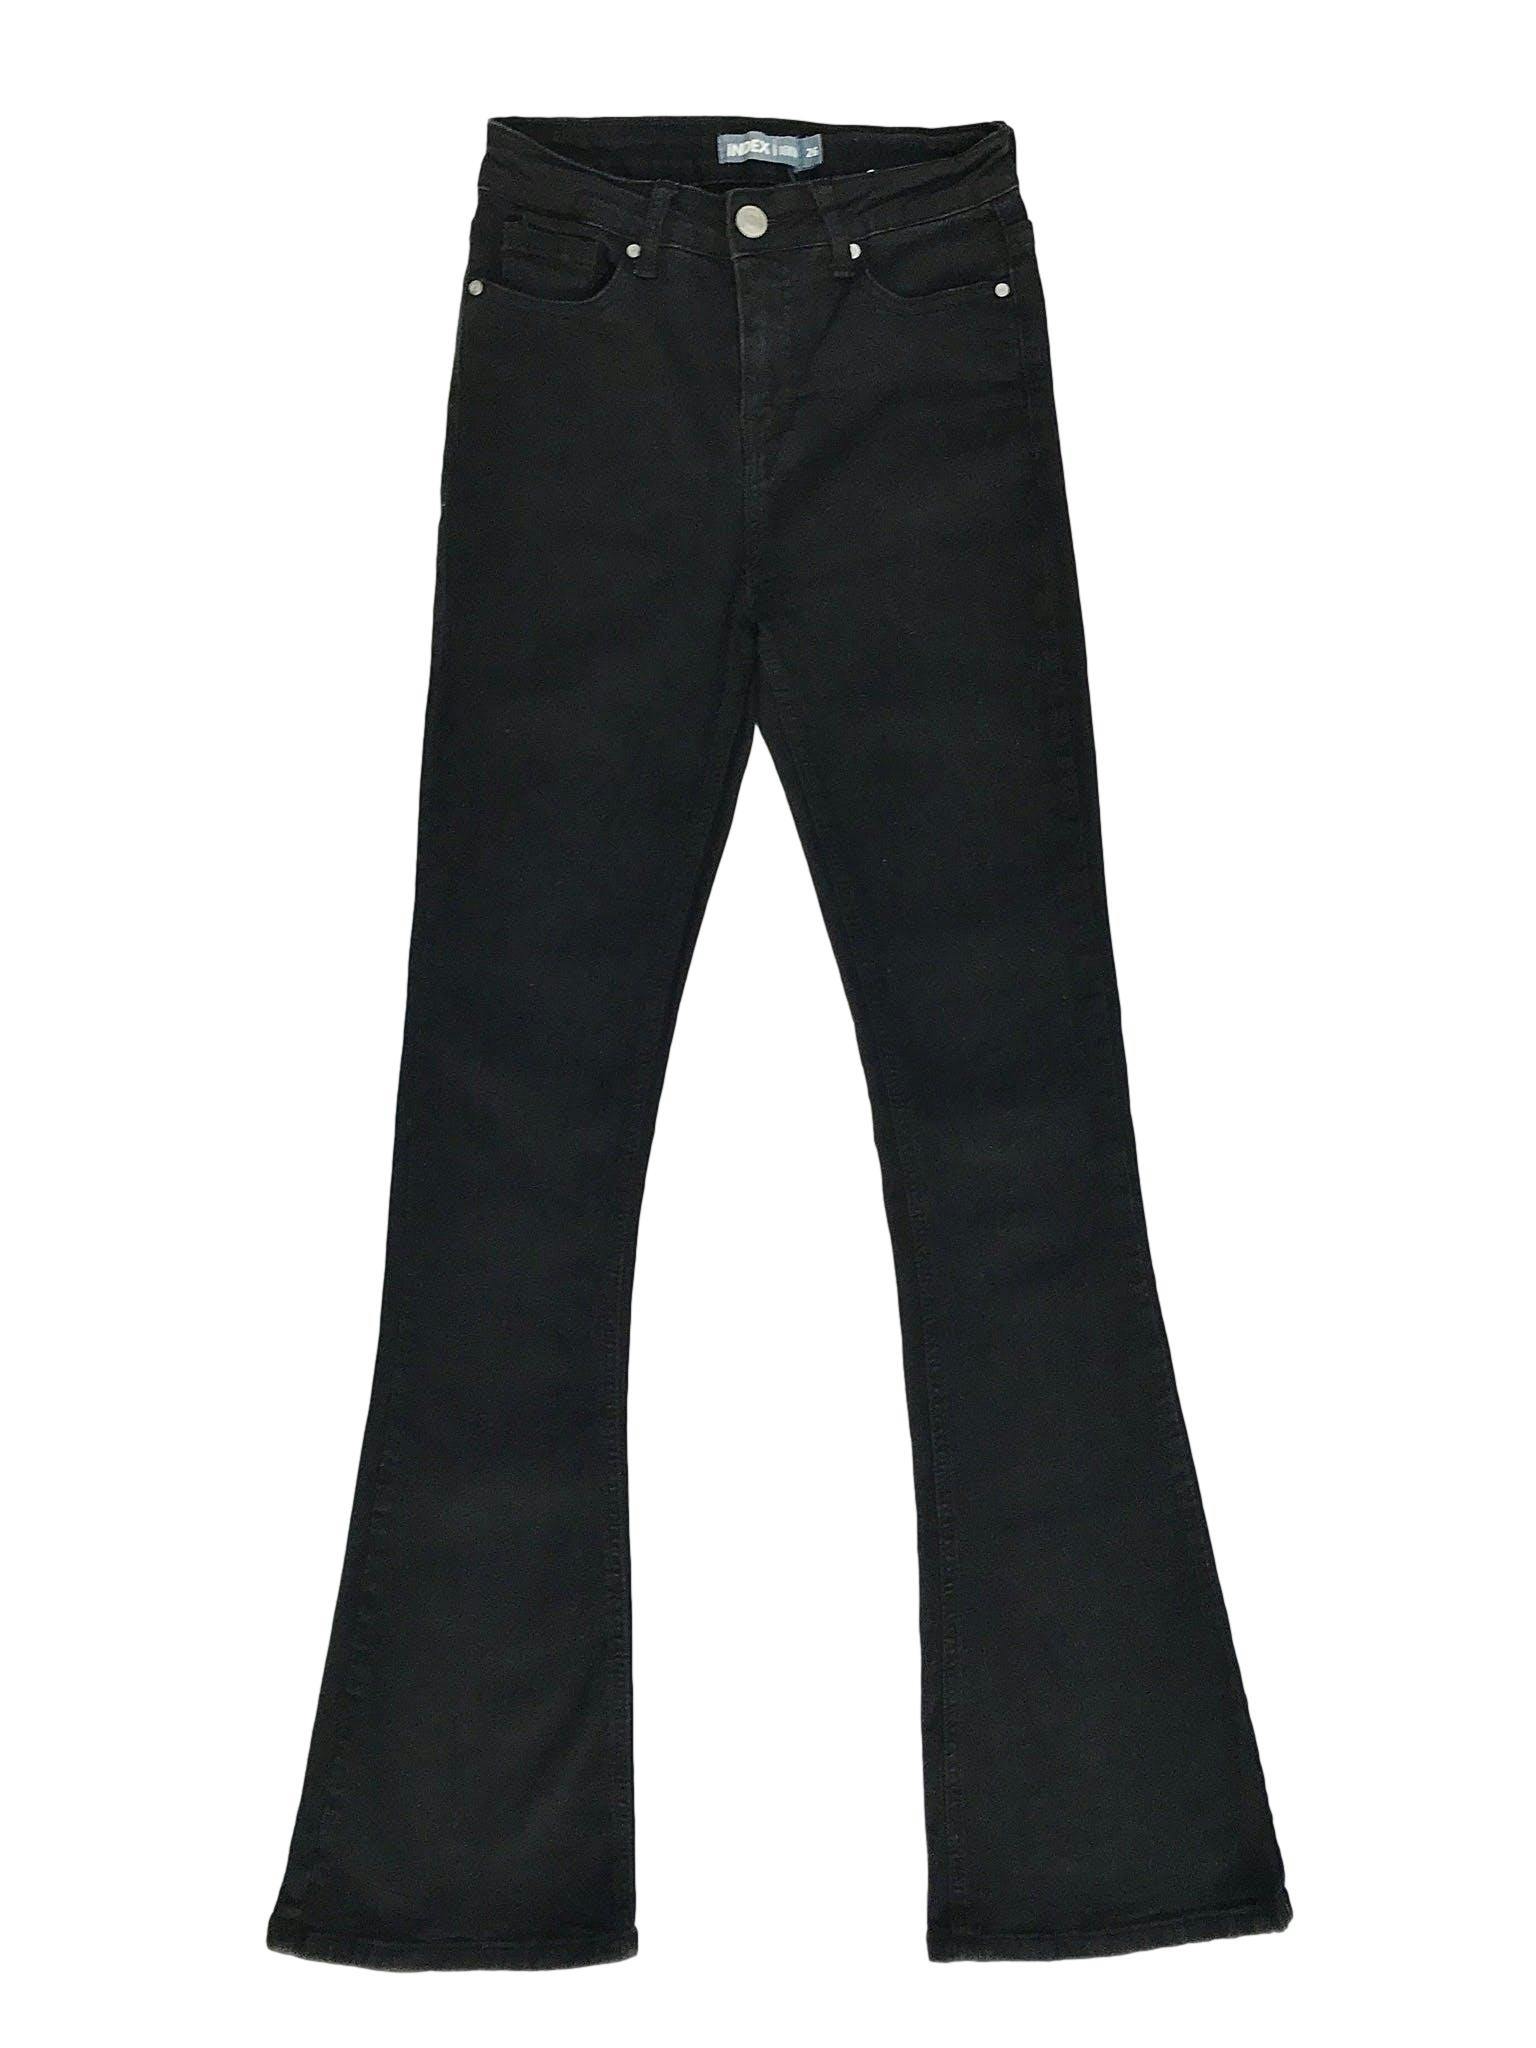 Pantalón index a la cintura, de denim negro stretch 75% algodón, 5 bolsillos, pegado con basta campana